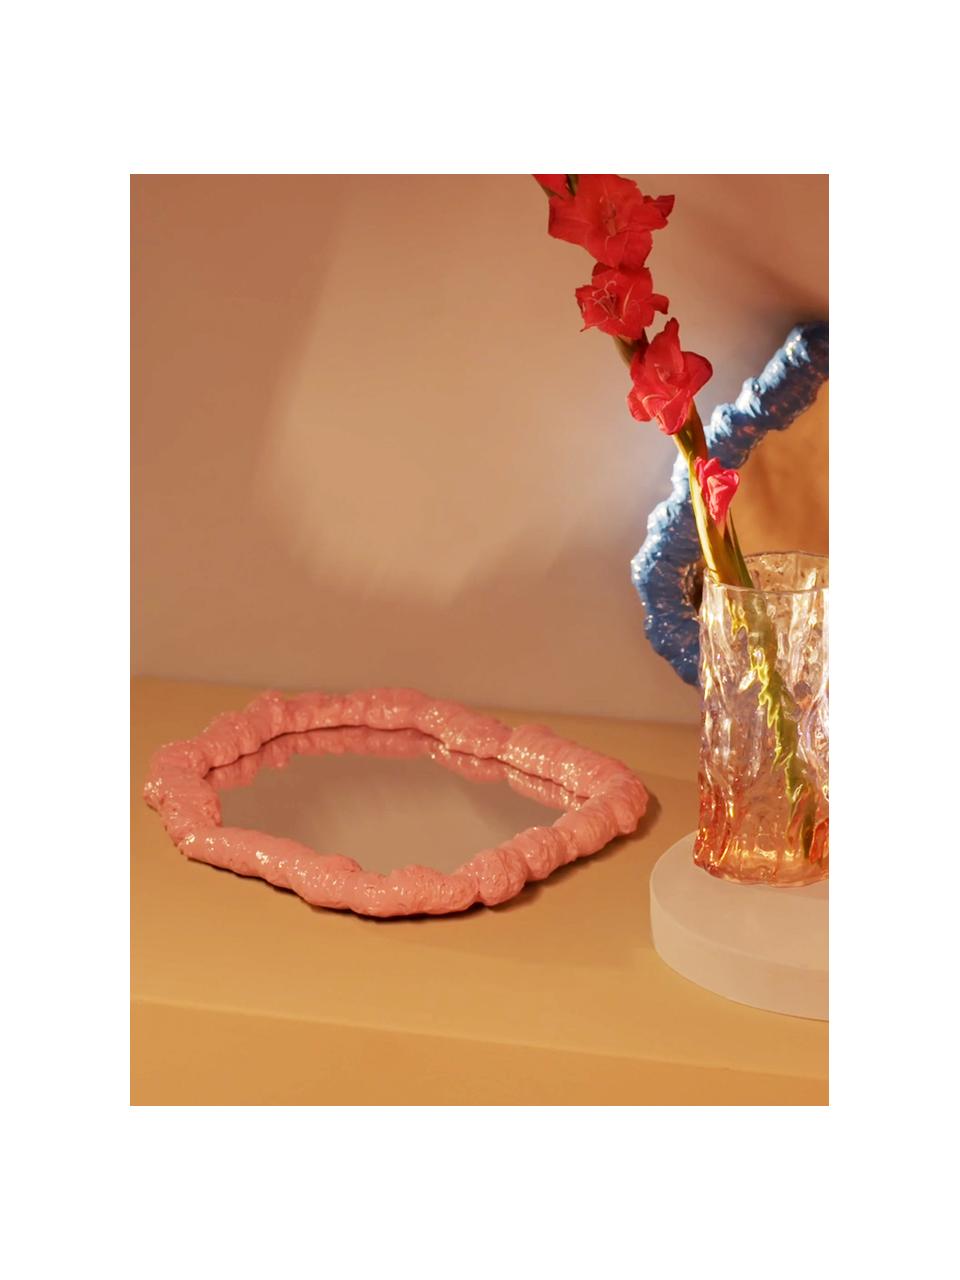 Specchio da parete con cornice in plastica rosa Purfect, Cornice: poliresina, Superficie dello specchio: lastra di vetro, Rosa, Larg. 31 x Alt. 43 cm